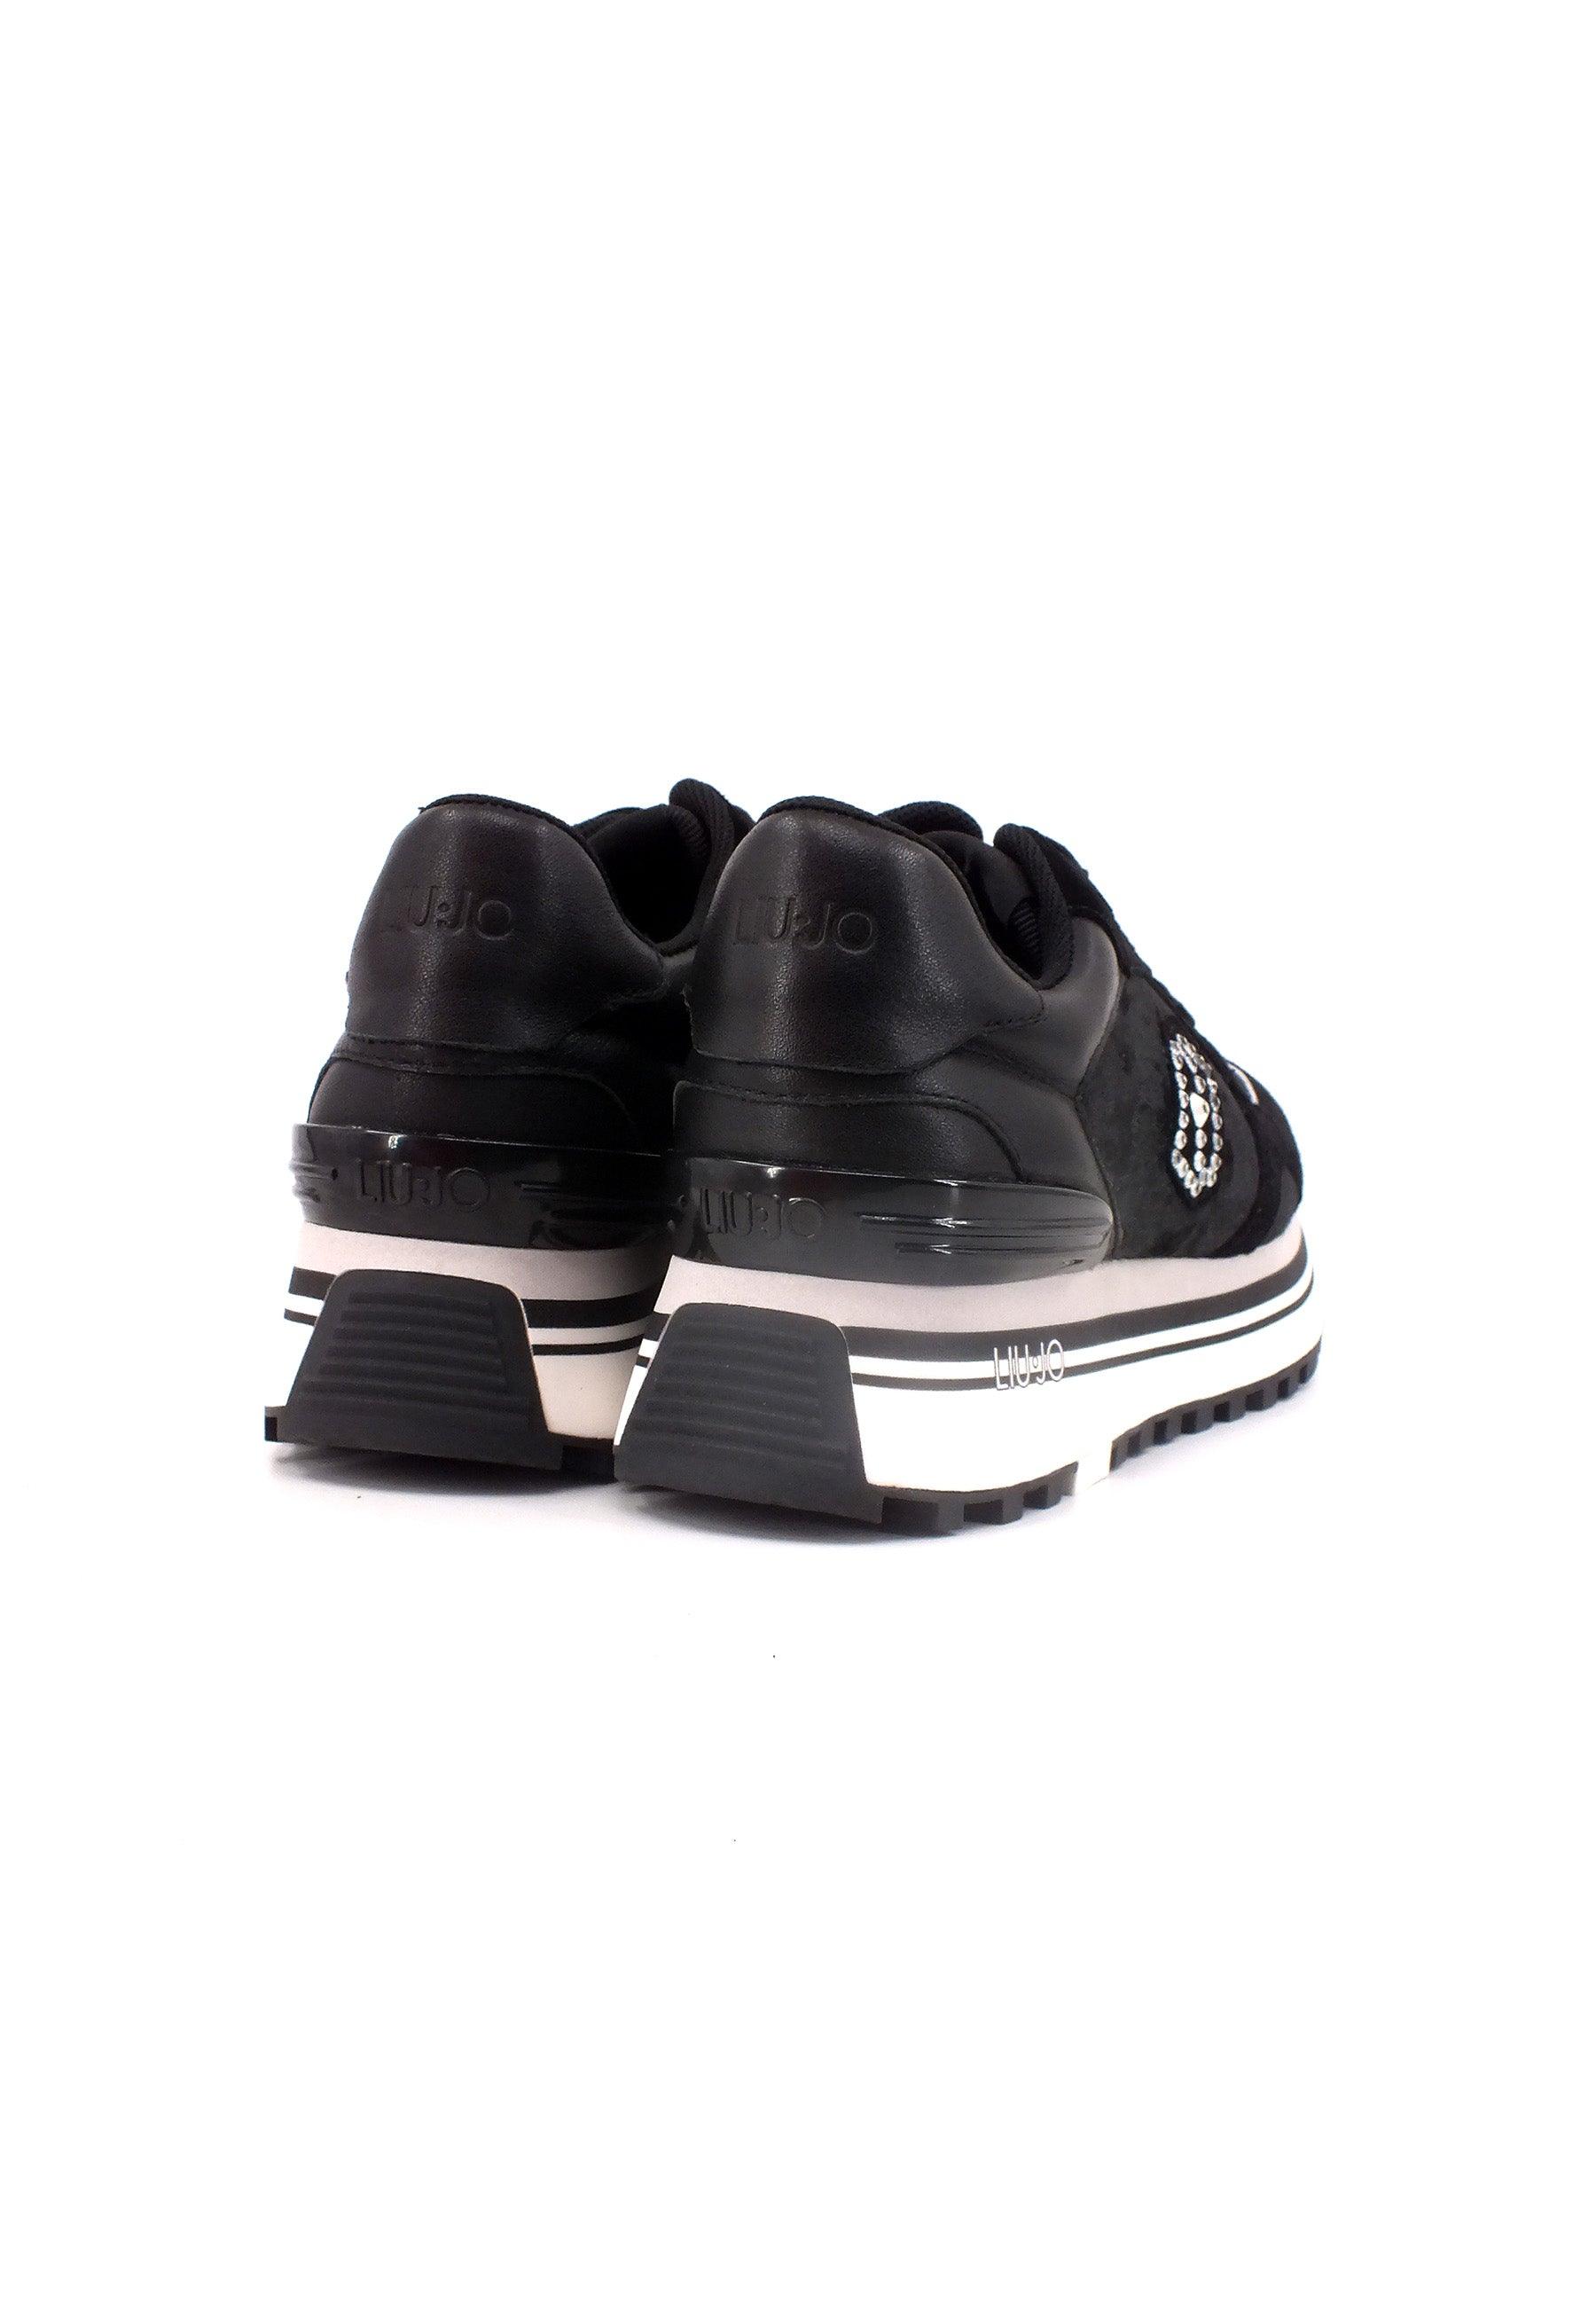 LIU JO Maxi Wonder 61 Sneaker Donna BF3091PX066 - Sandrini Calzature e Abbigliamento